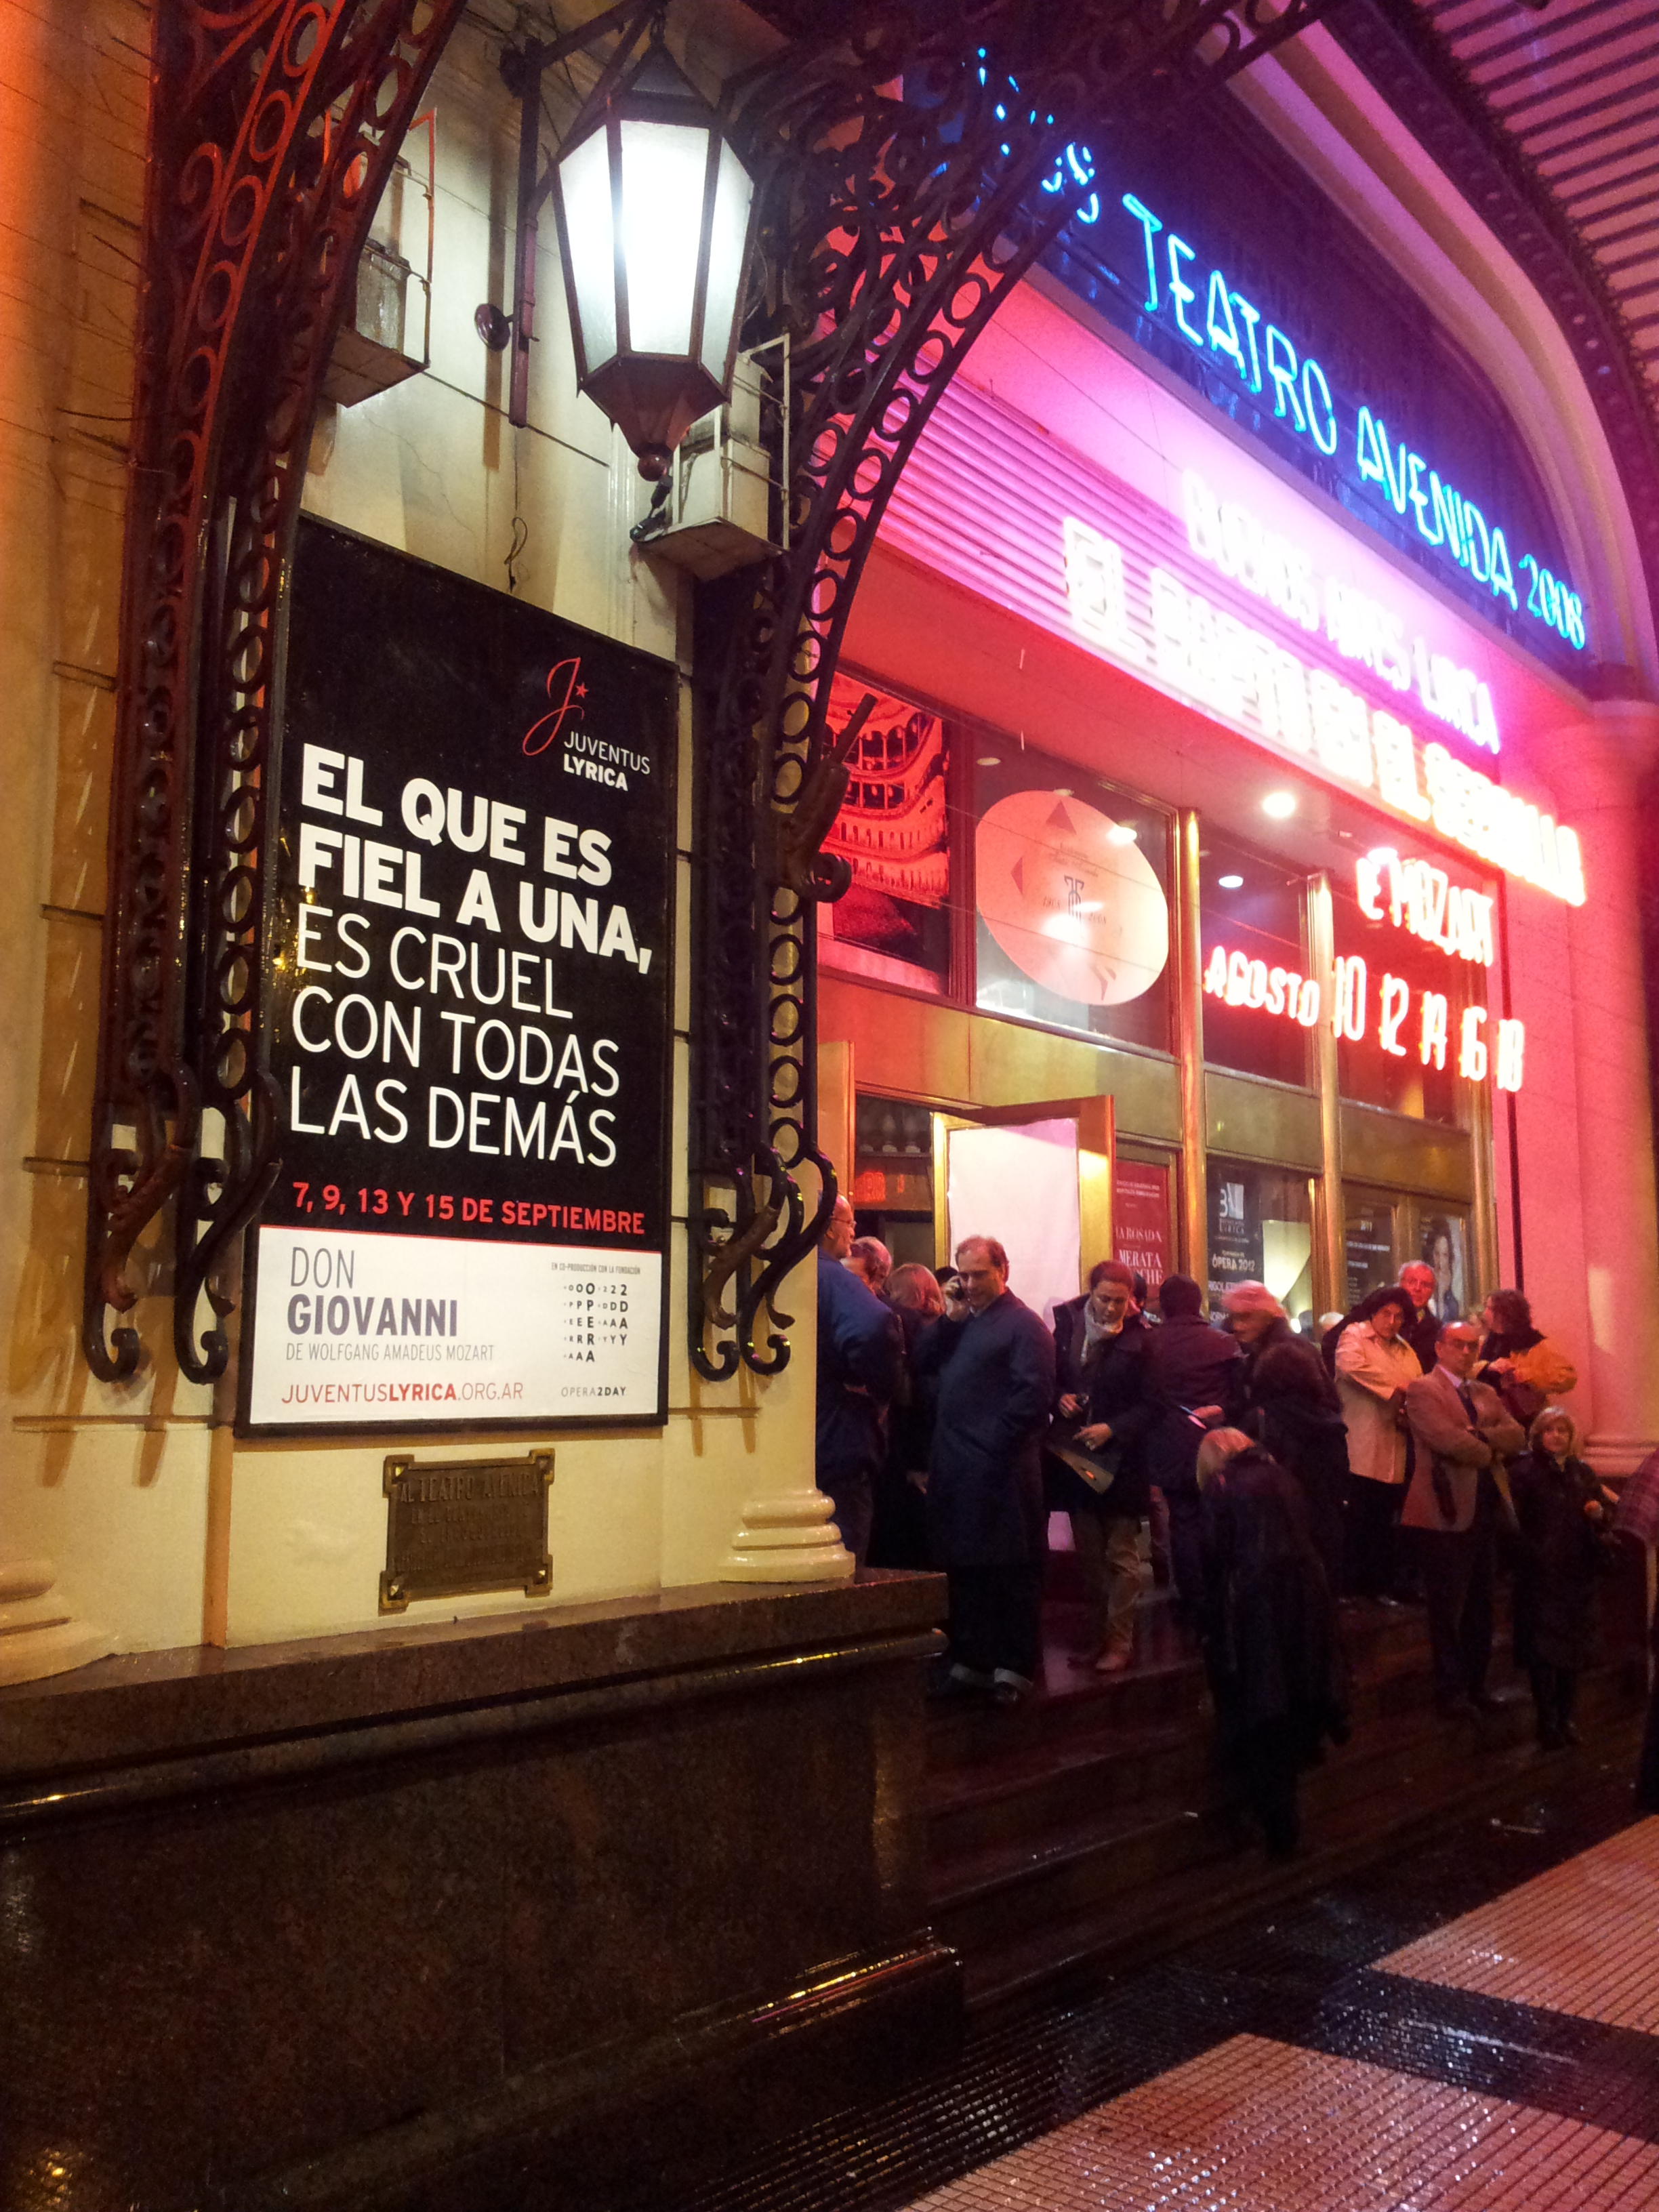 'Wie trouw is aan één, doet de anderen onrecht' Poster op Teatro Avenida in Buenos Aires (foto Serge van Veggel)